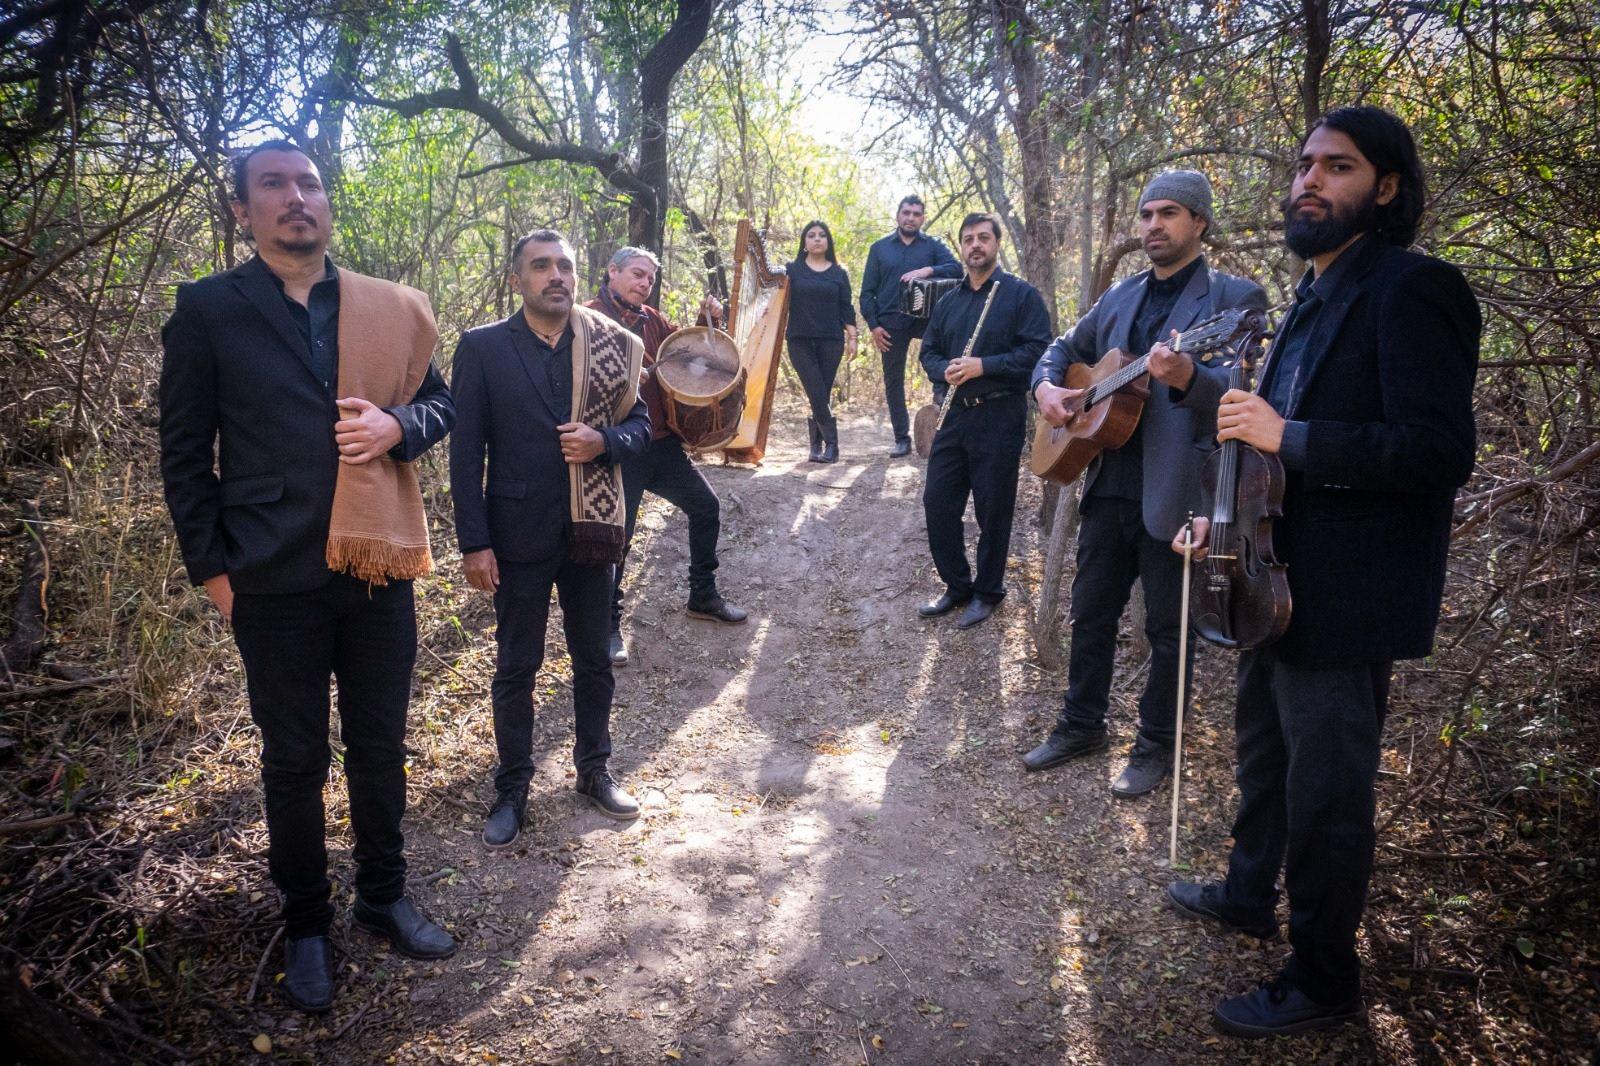 El Duacuteo Carabajal ndash Caacuteceres y La Orquesta Sachera a puro canto nativo en el Parque del Encuentro